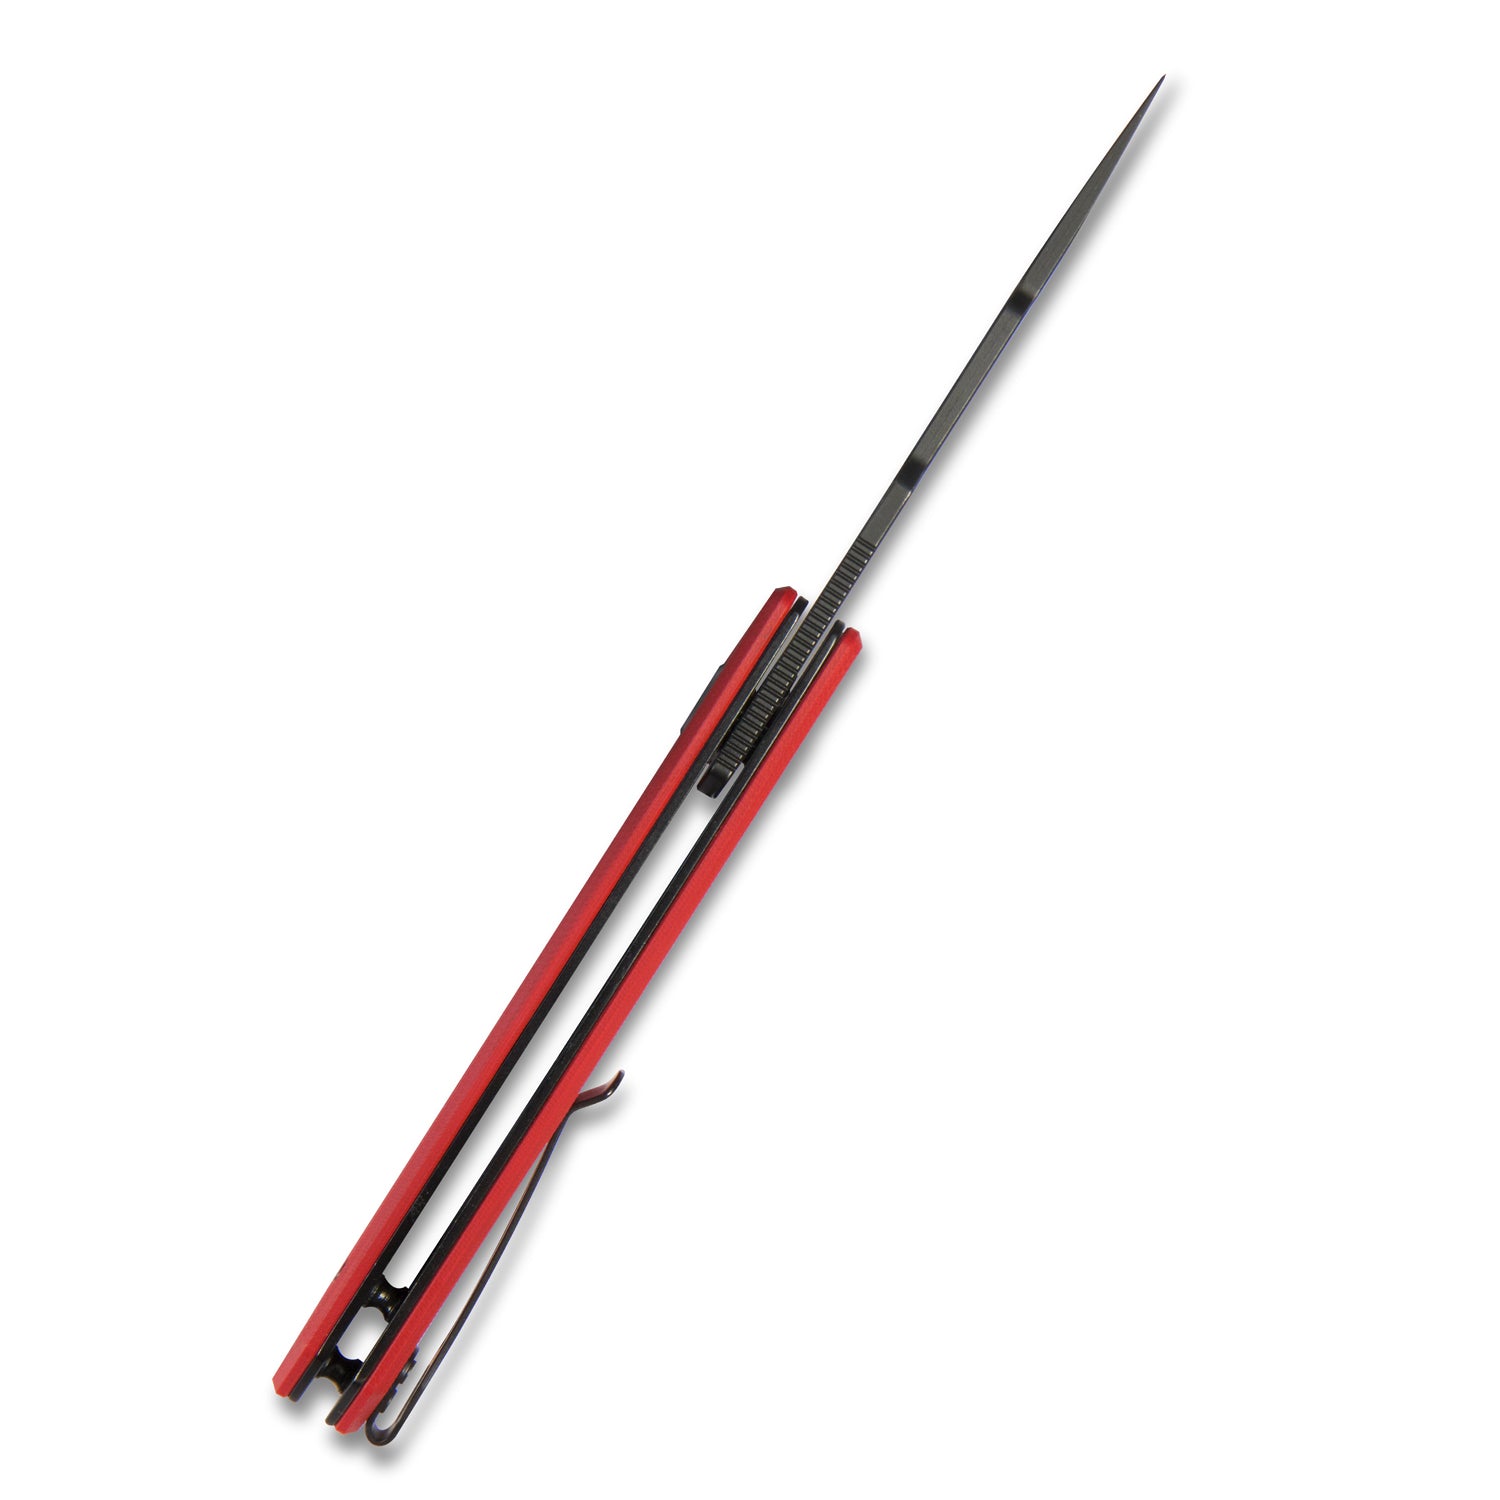 Kubey Avenger Outdoor Edc Folding Pocket Knife Red G10 Handle 3.07" Dark Stonewashed D2 KU104D